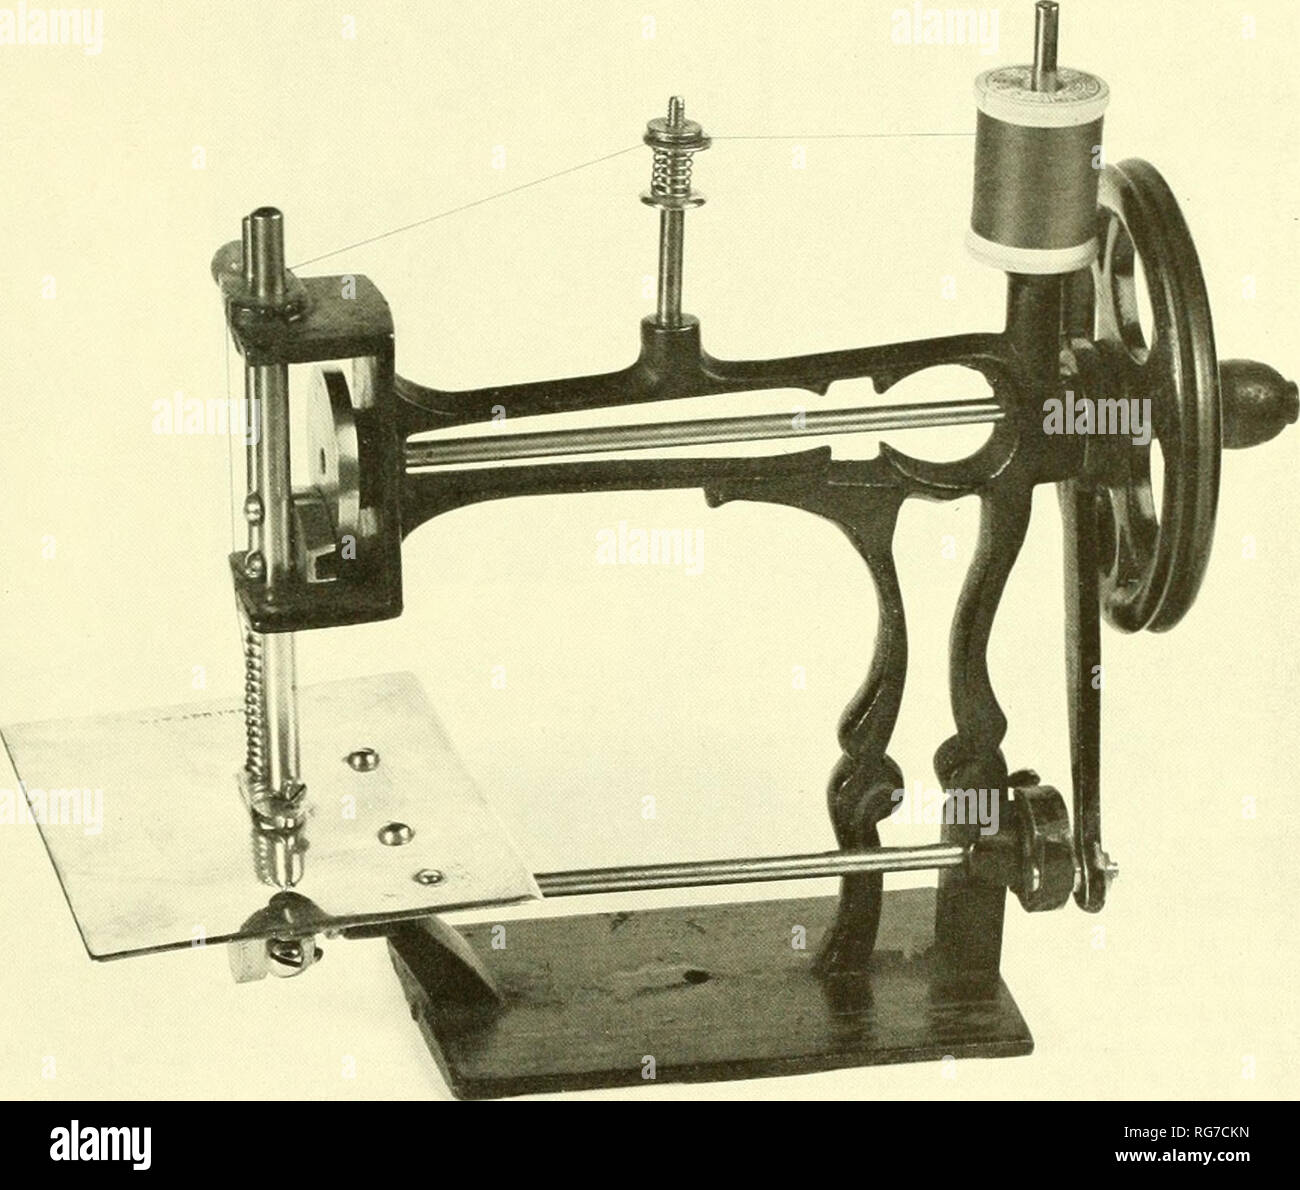 Boletín - Museo Nacional de los Estados Unidos. La ciencia. Figura  ántico de máquina de coser, 1869. Esta máquina es típico de las  muchas variedades fabricados durante un período de tiempo